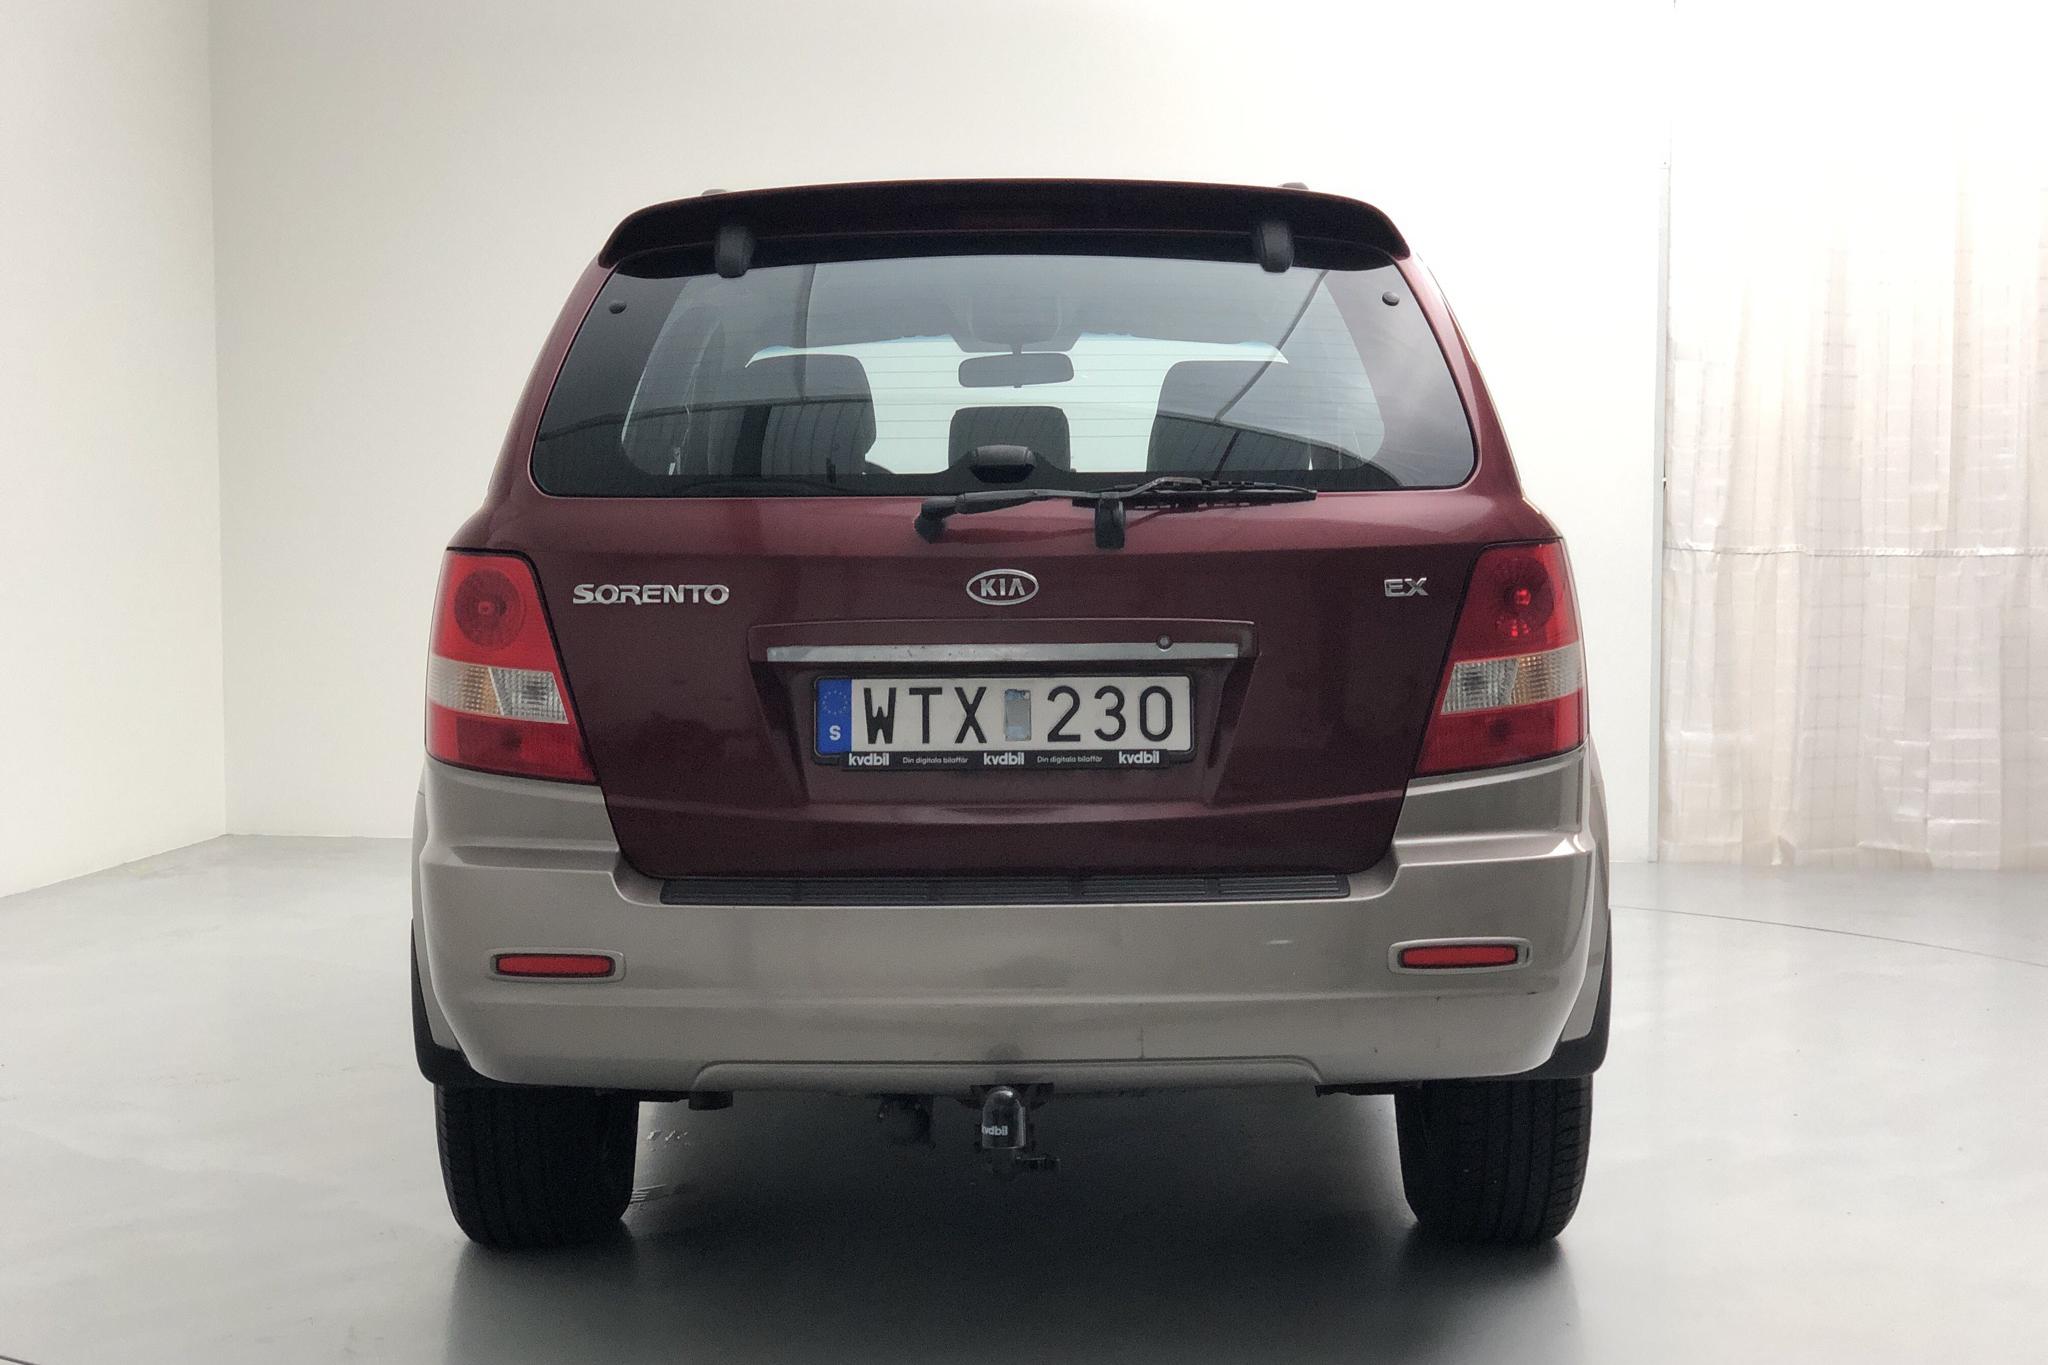 KIA Sorento 3.5 V6 (195hk) - 116 410 km - Automatic - red - 2005